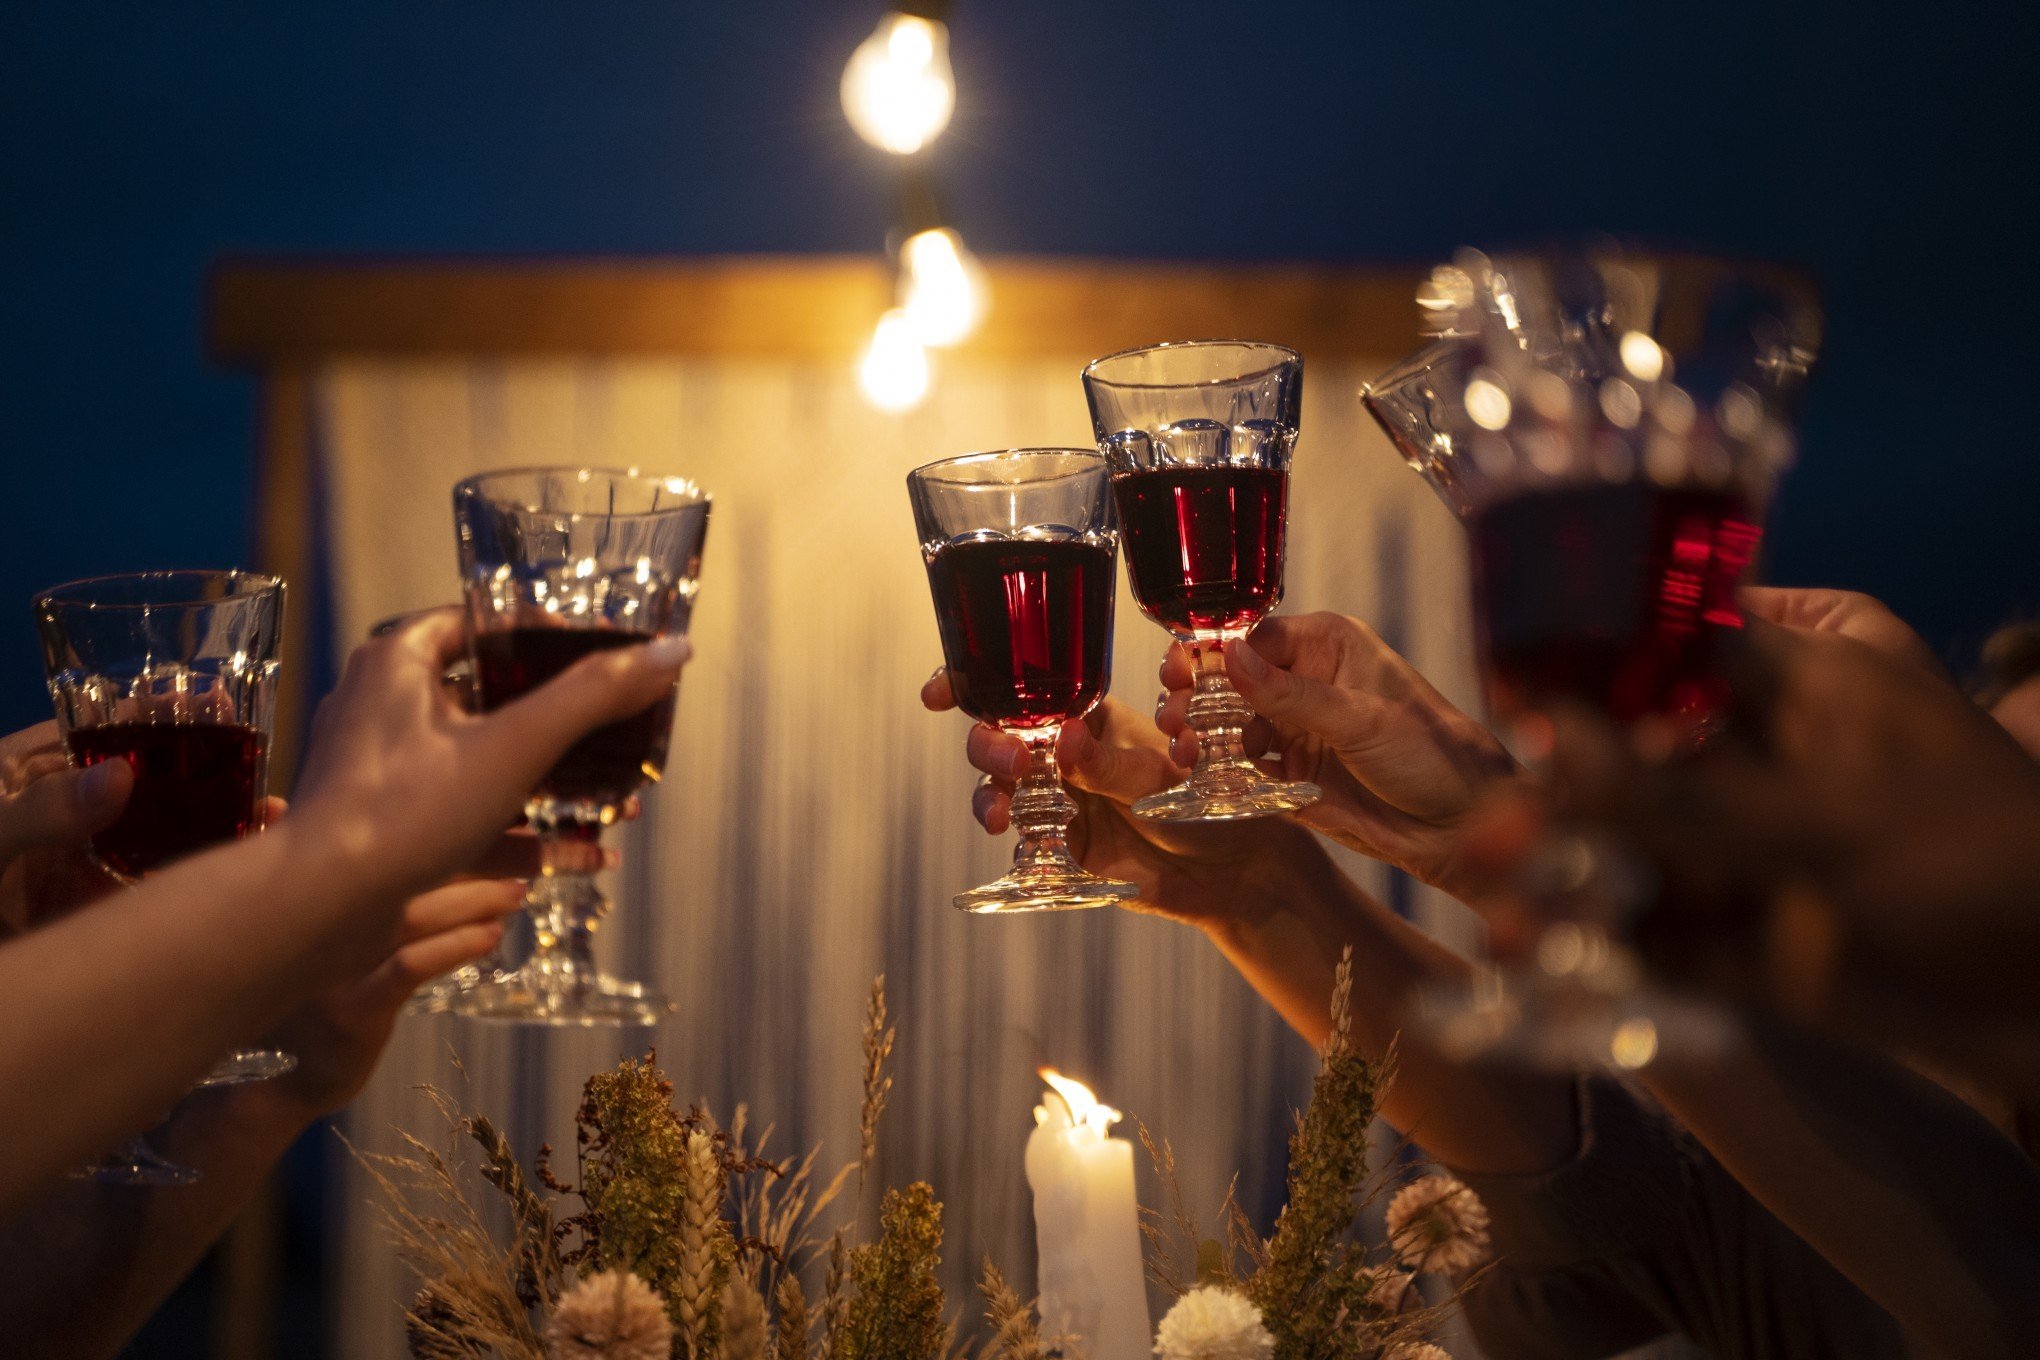 Veja sugestões de como harmonizar vinhos e espumantes na ceia de Natal segundo especialista